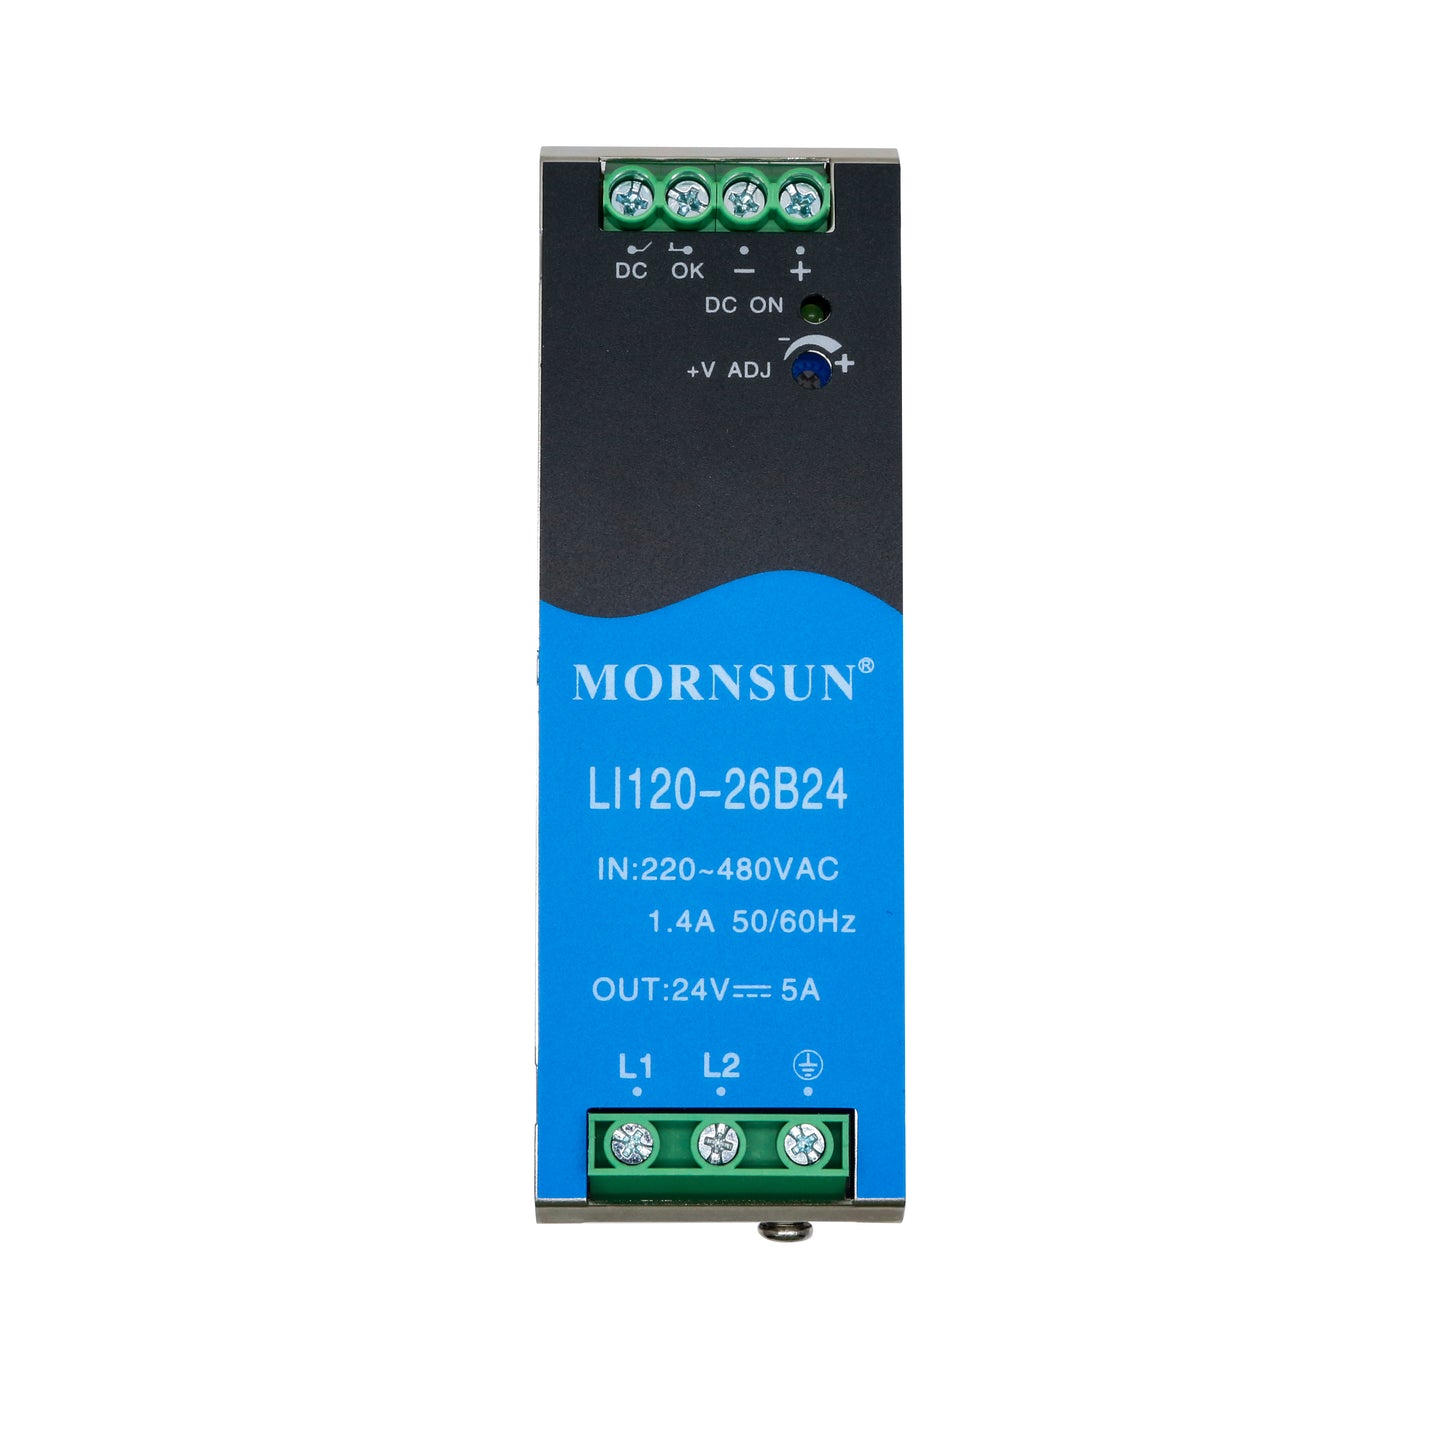 Mornsun SMPS Switching Power Supply 12V 24V 48V 120W LI120 3-Phase 180-600VAC AC DC Din Rail Power Supply 120W 12V 24V 48V